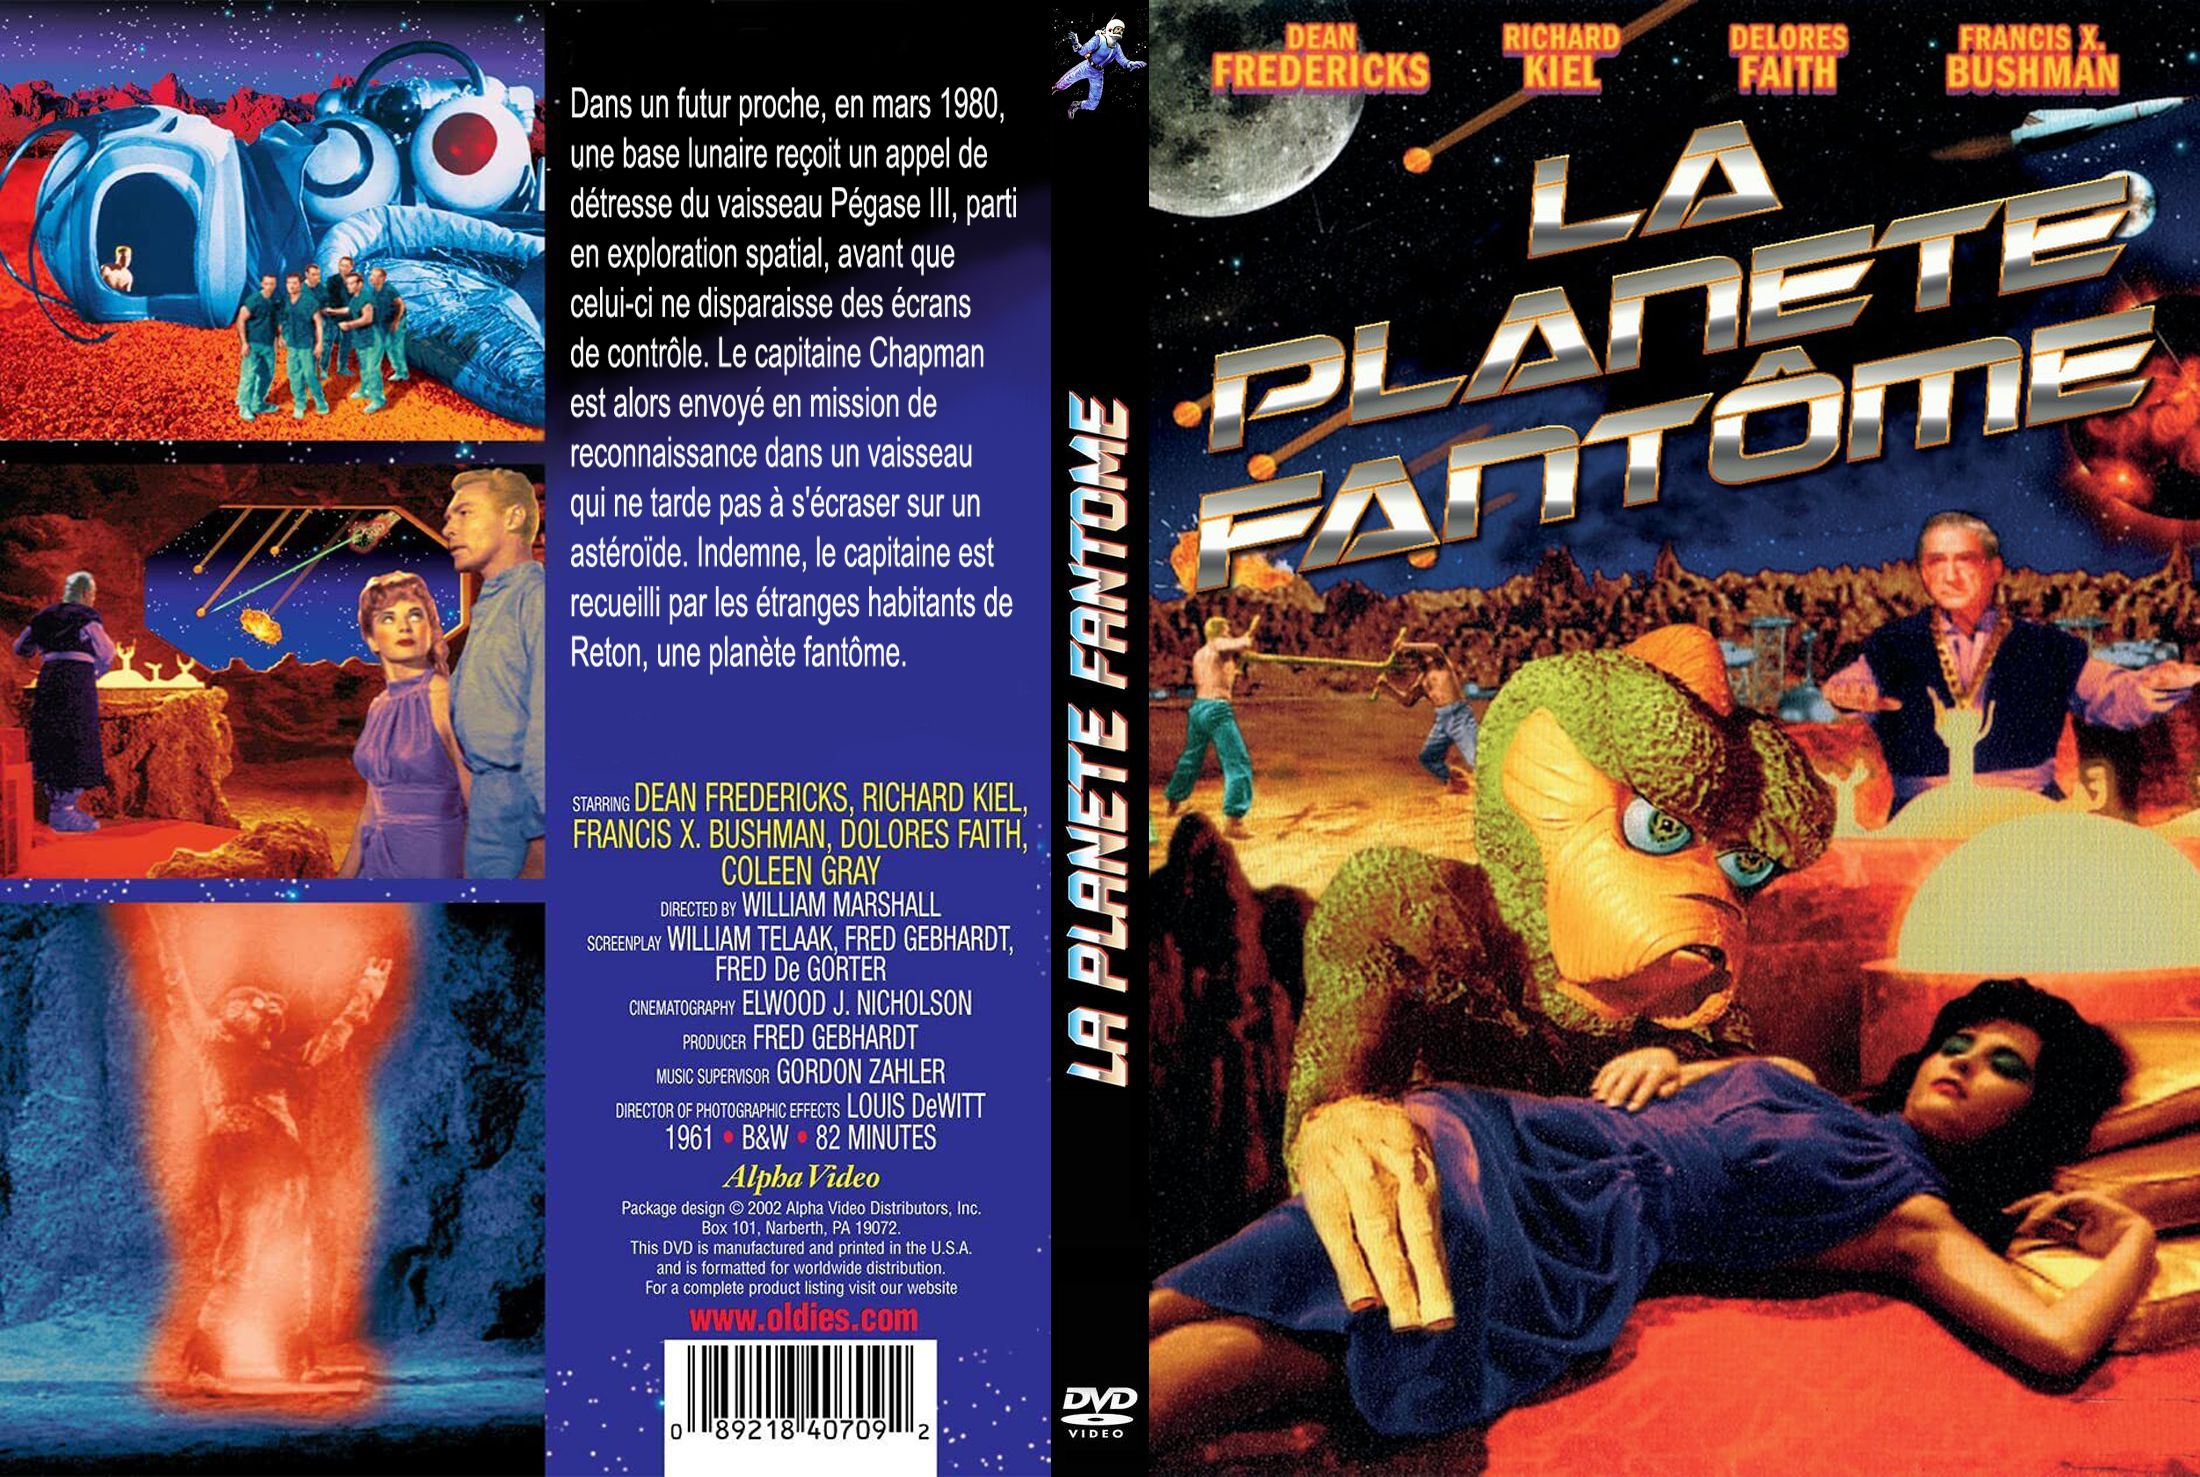 Jaquette DVD La planete fantme custom